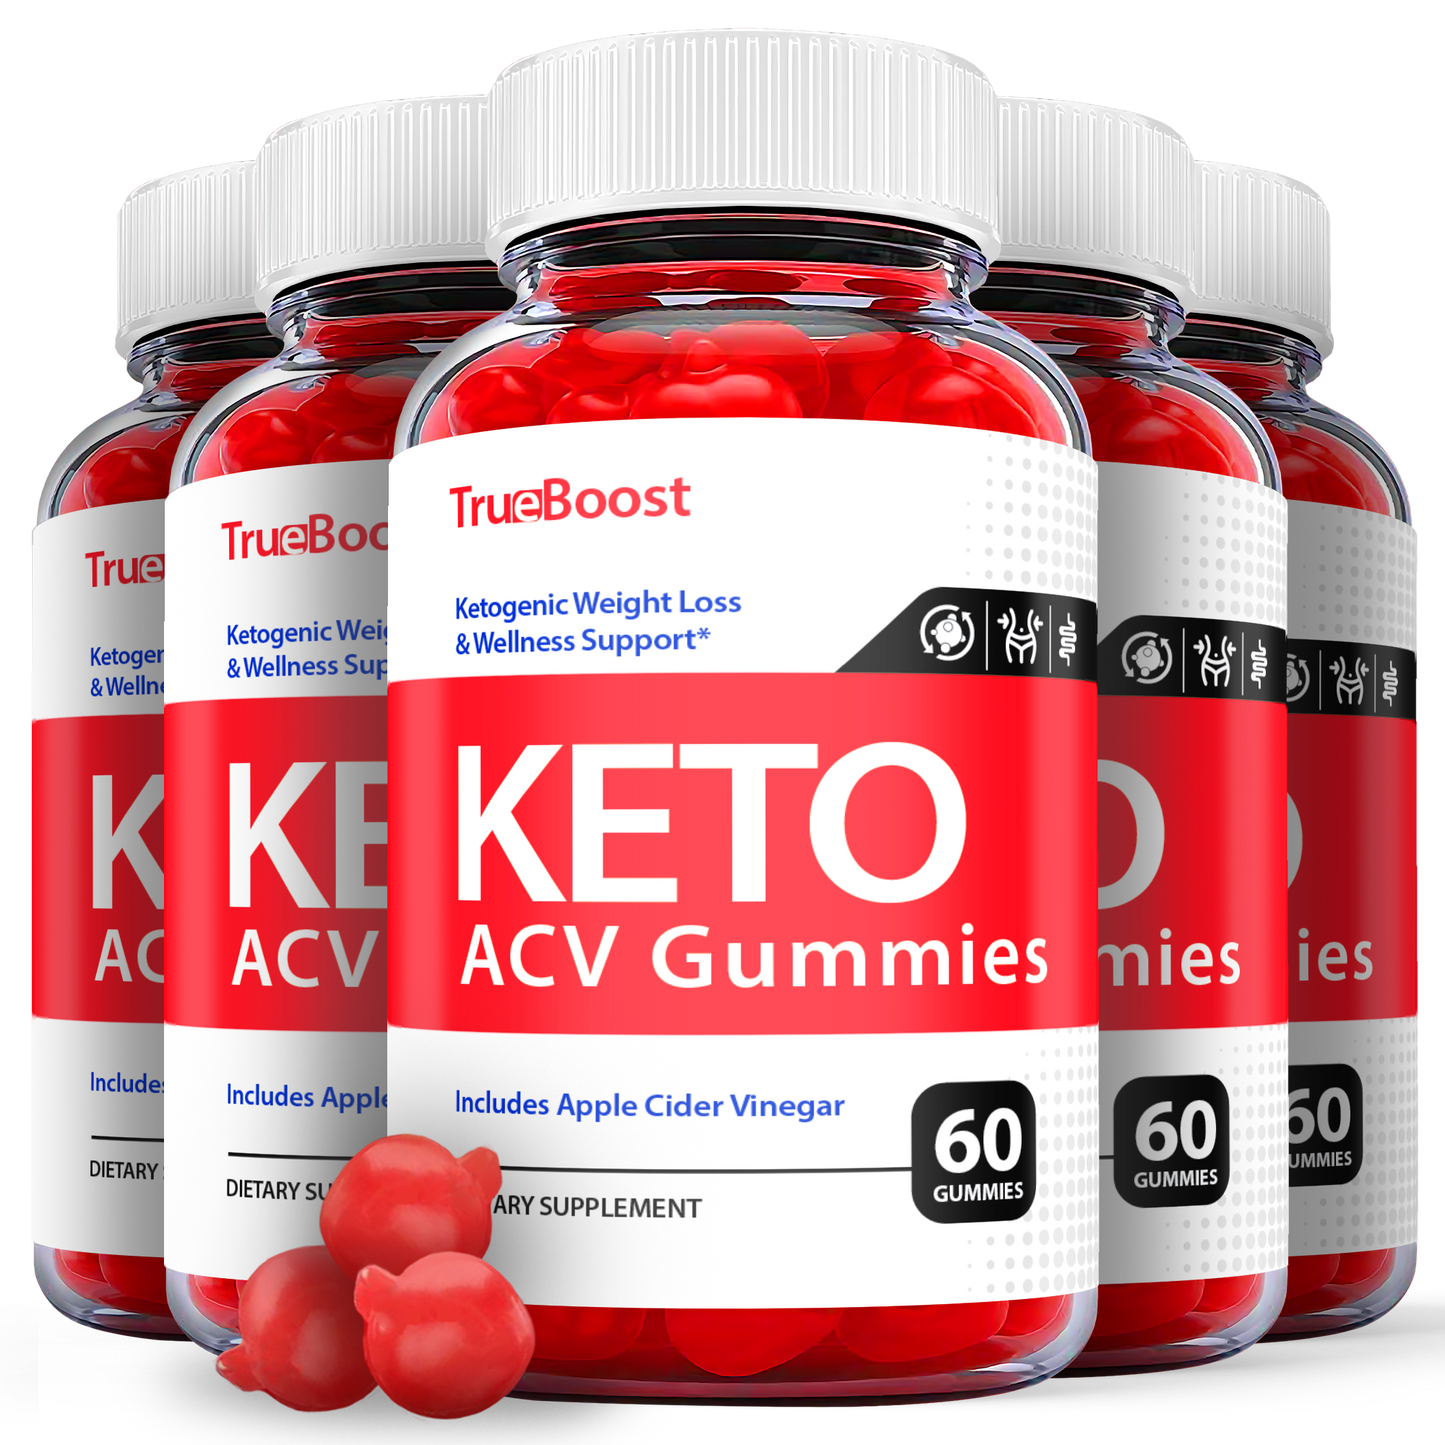 True Boost Keto ACV Gummies